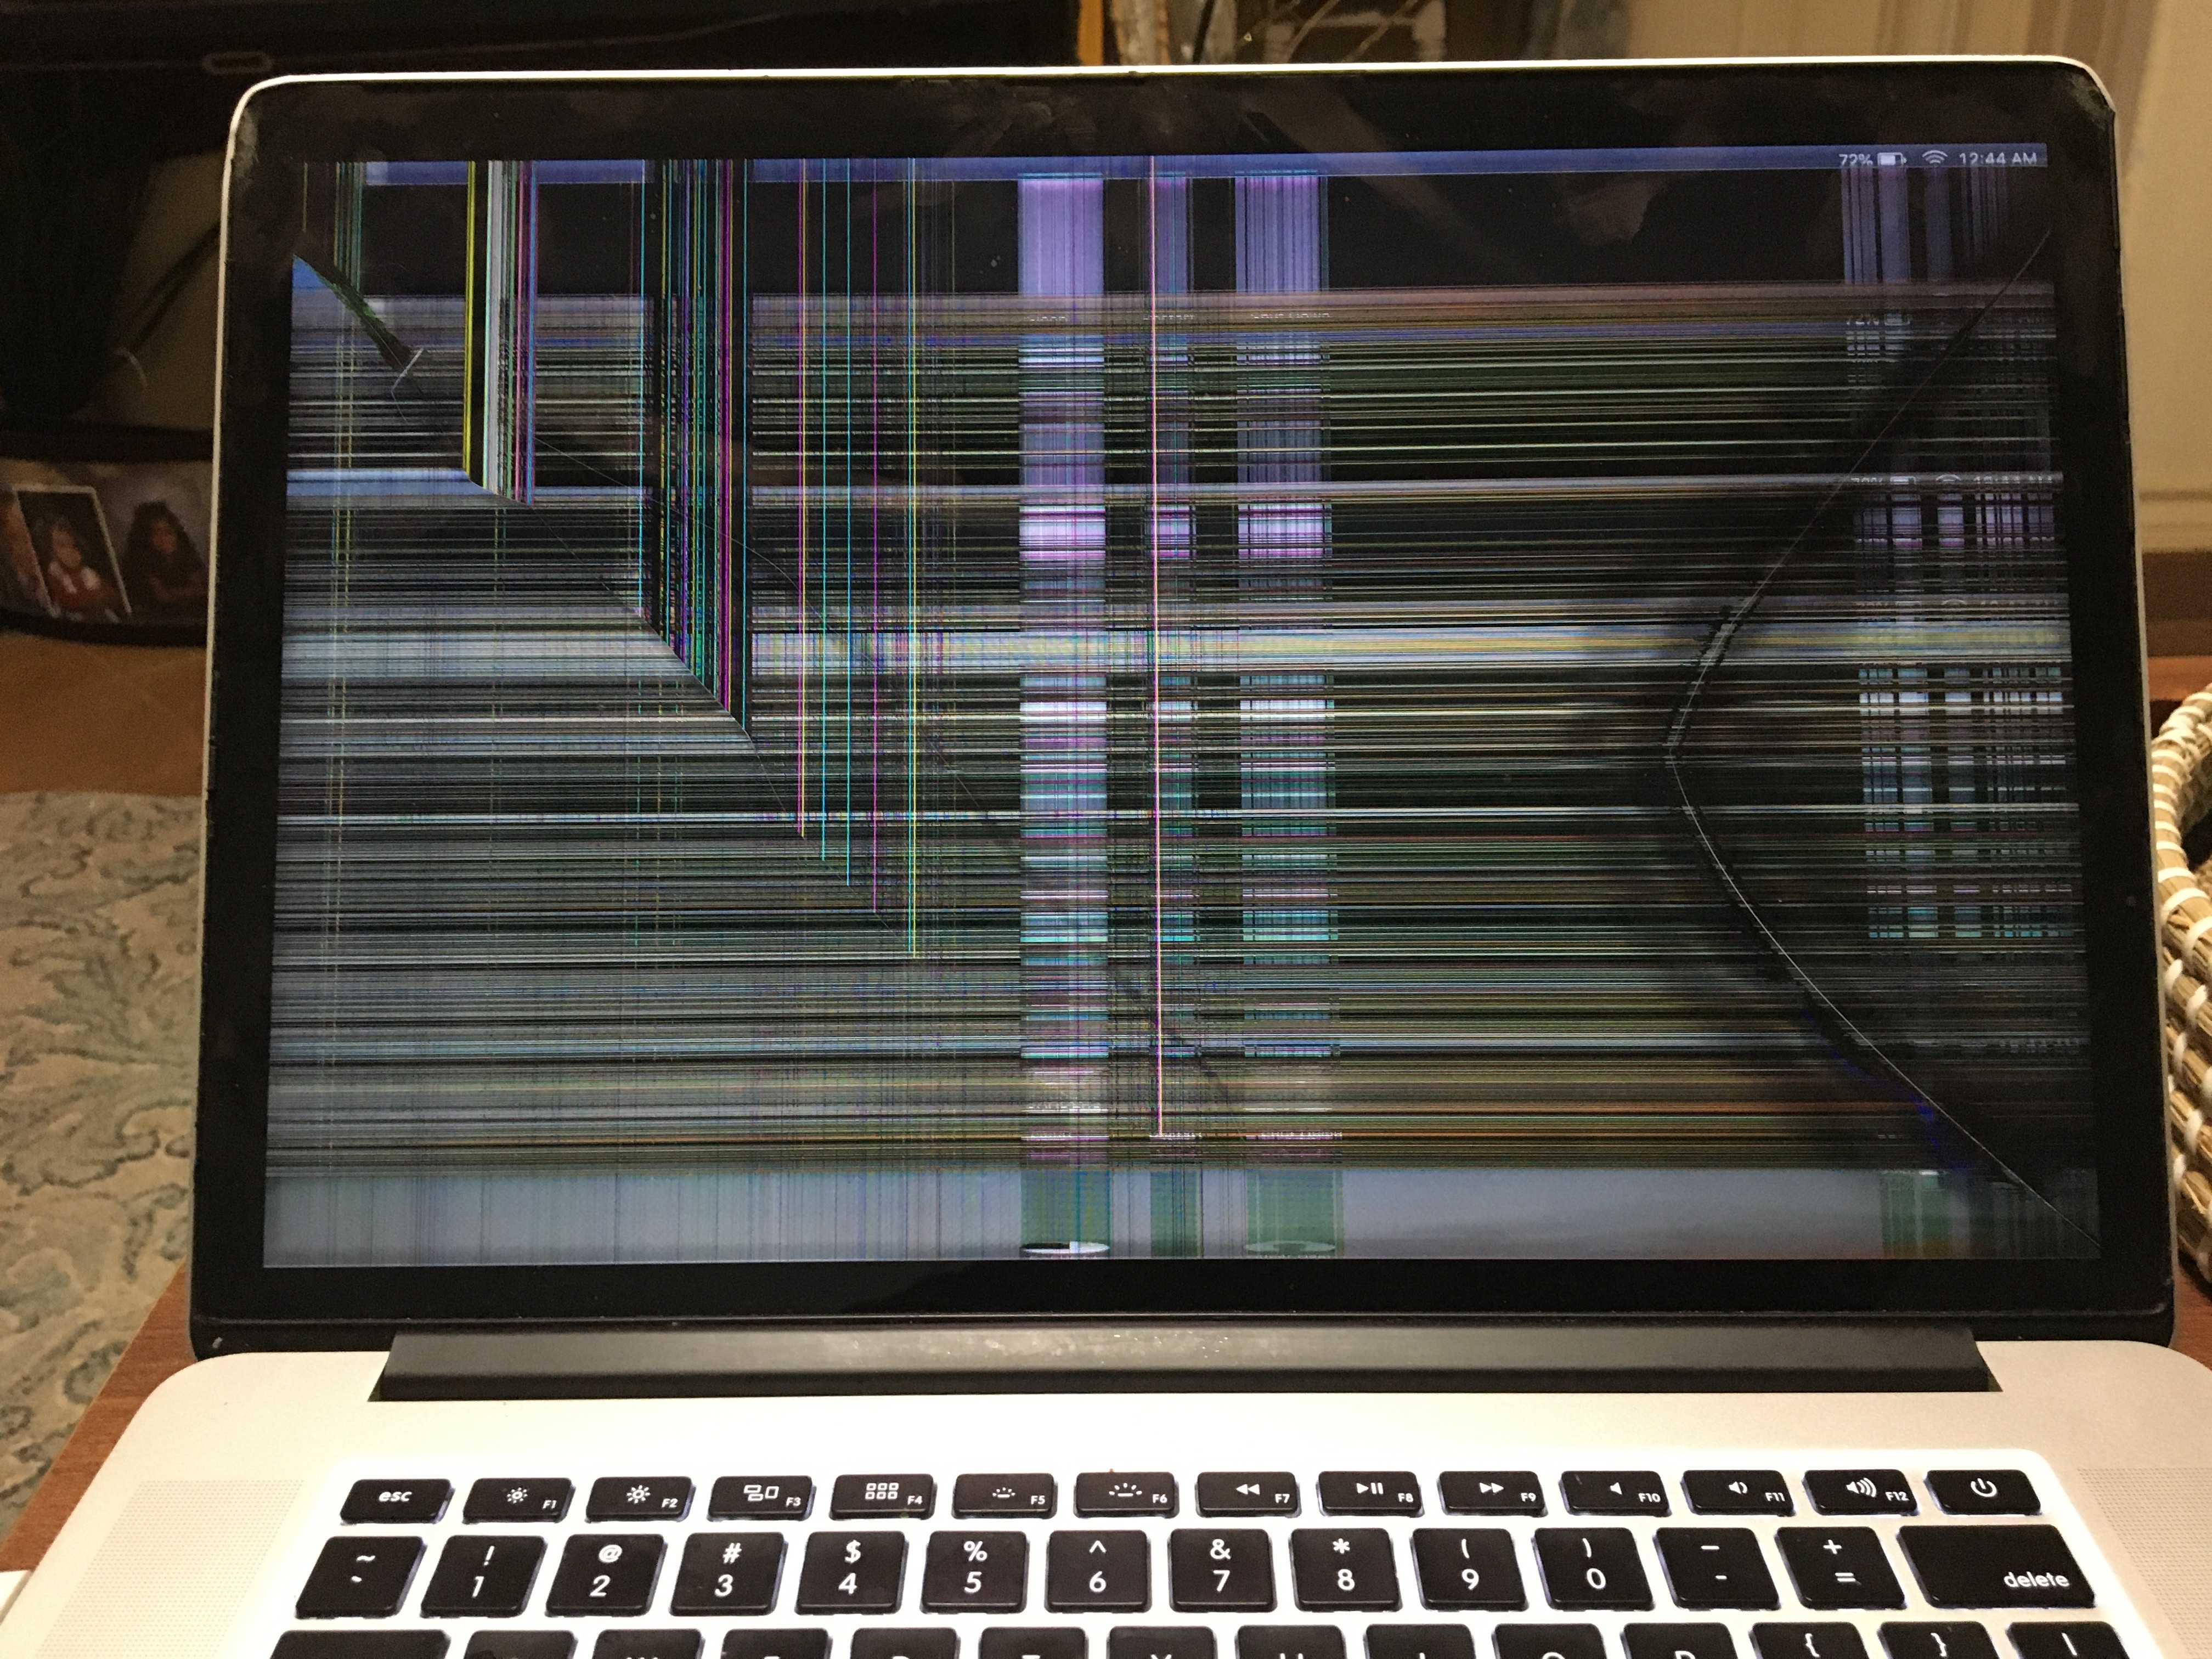 Screen Is Broke On My 2018 Macbook Pro, How To Mirror Macbook With Broken Screen